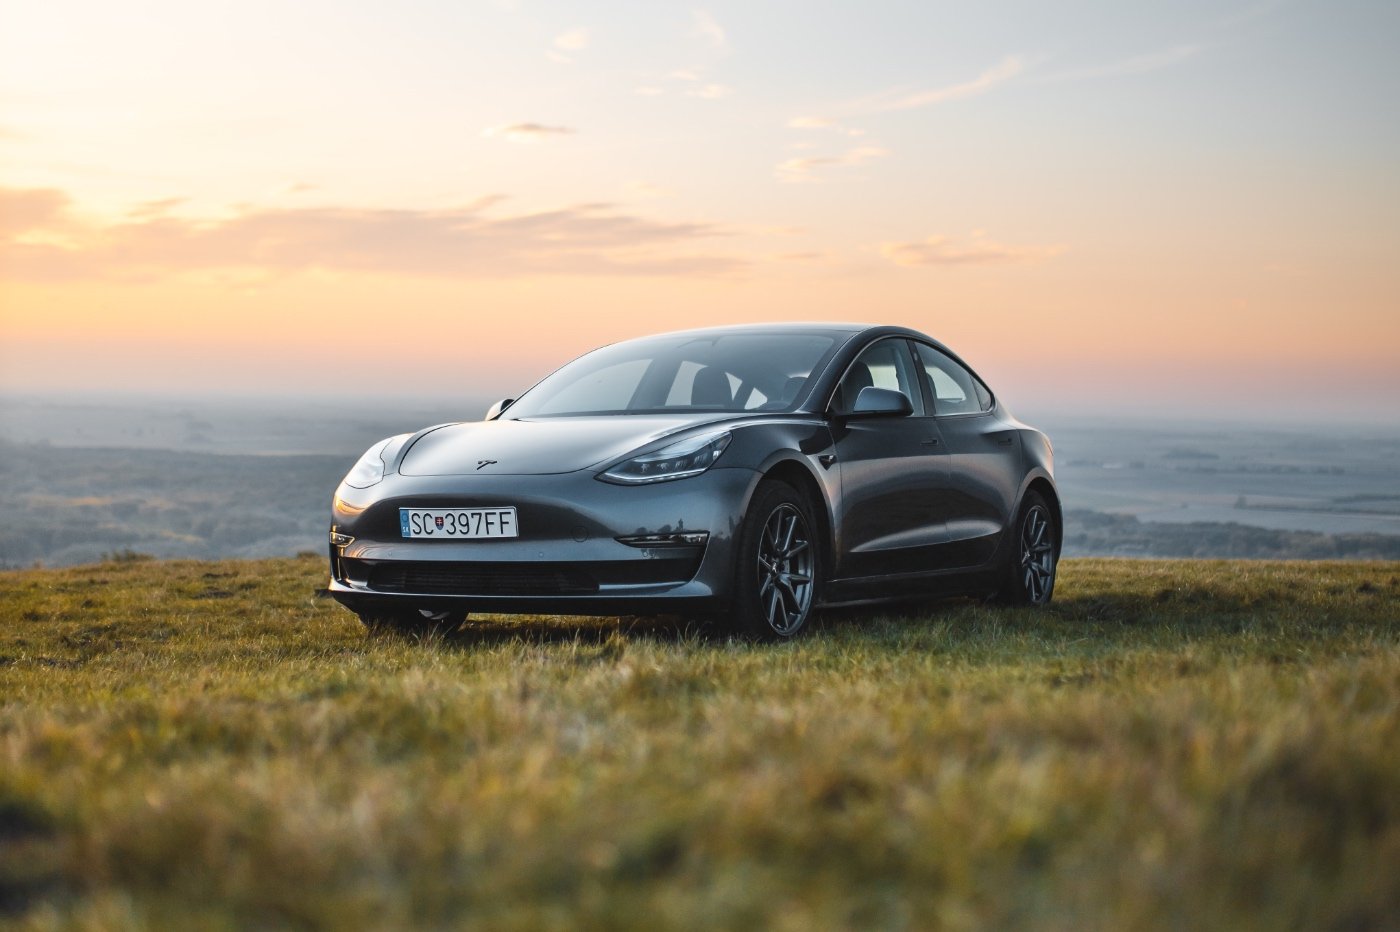 Incroyable ! La Tesla Model 3 est la voiture la plus vendue d'Europe